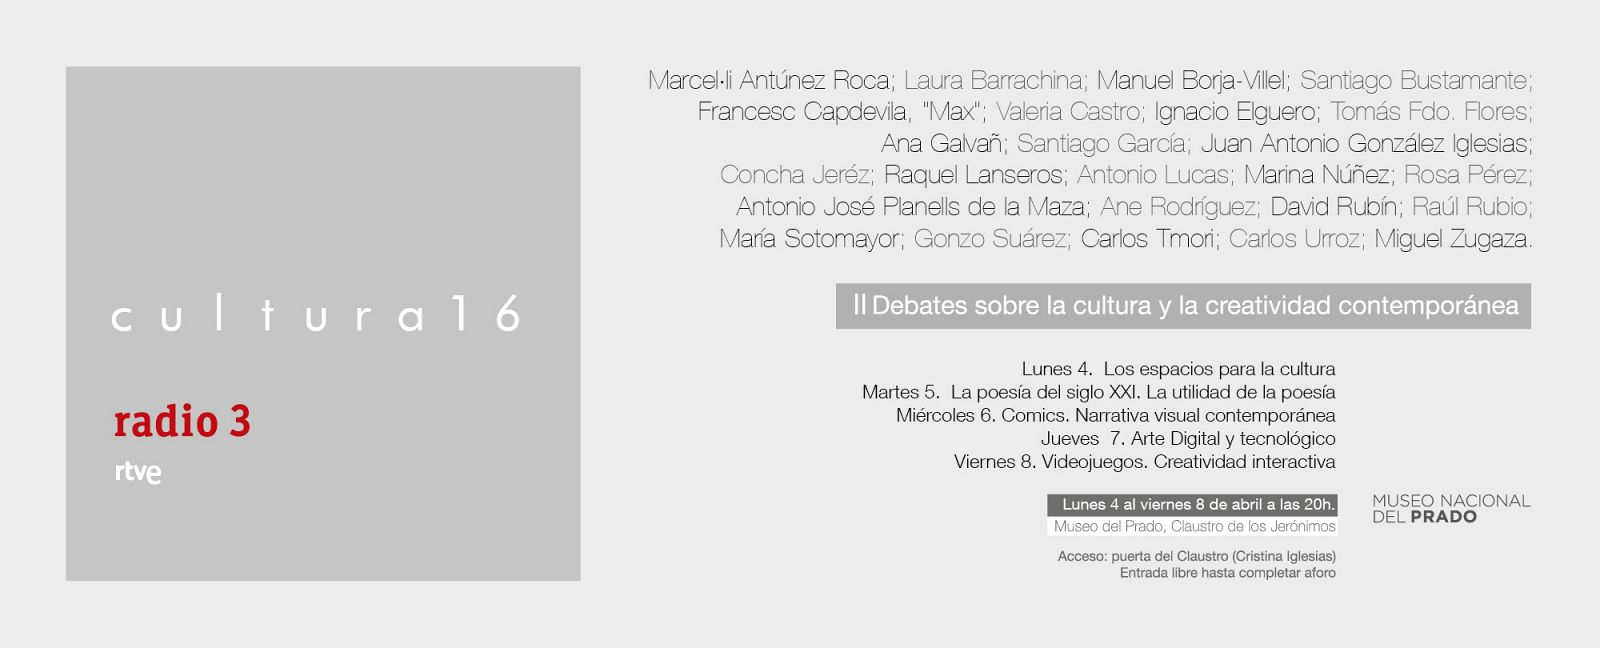 Cartel de la segunda edición de 'Cultura16', organizado por Radio 3